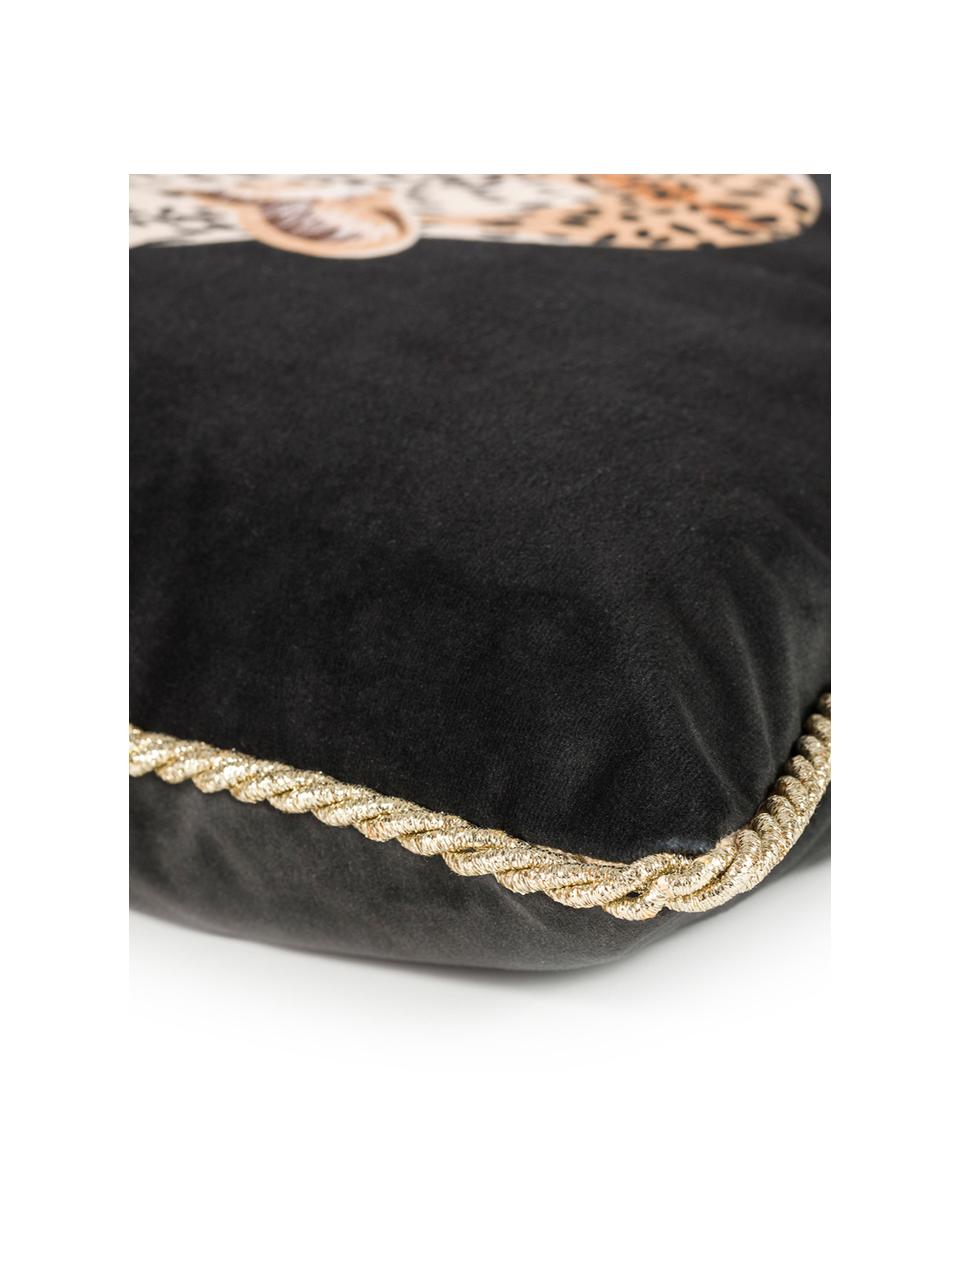 Dwustronna poszewka na poduszkę z aksamitu Deluxe Leo, 100% aksamit poliestrowy, nadruk, Czarny, brązowy, biały, odcienie złotego, S 40 x D 40 cm